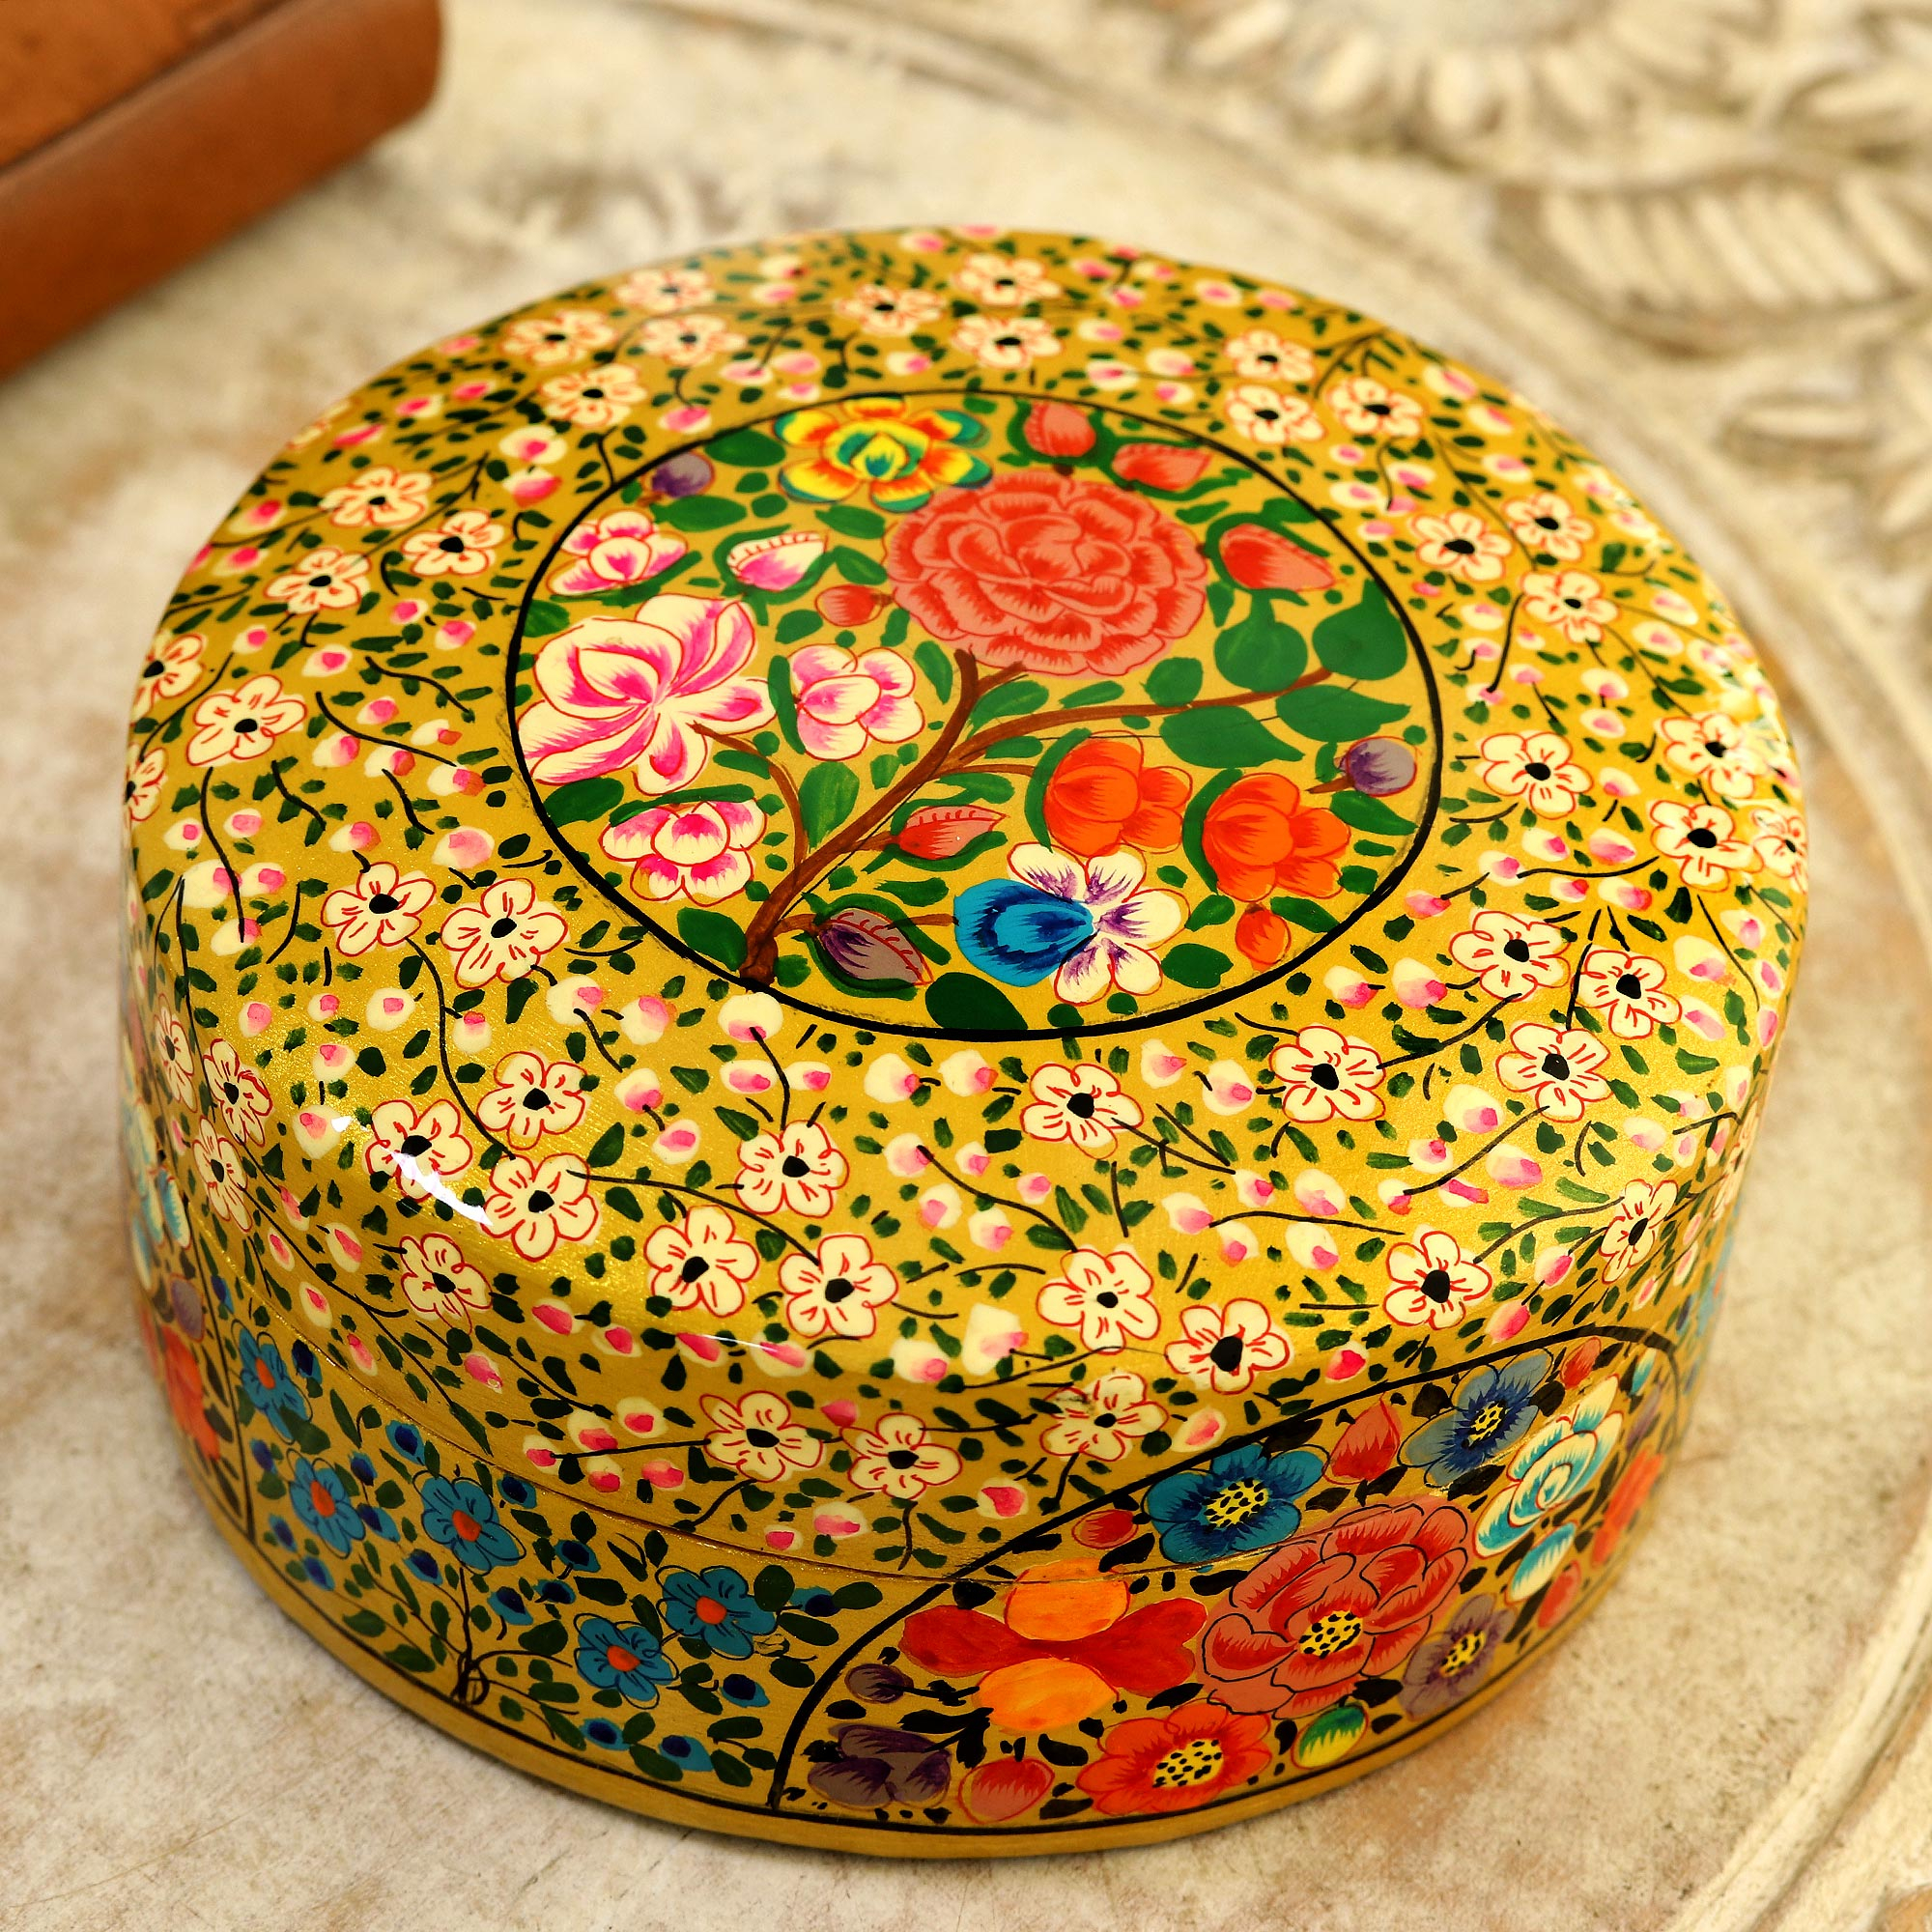 Floral Decorative Papier Mache Box from India - Kashmir Blooms